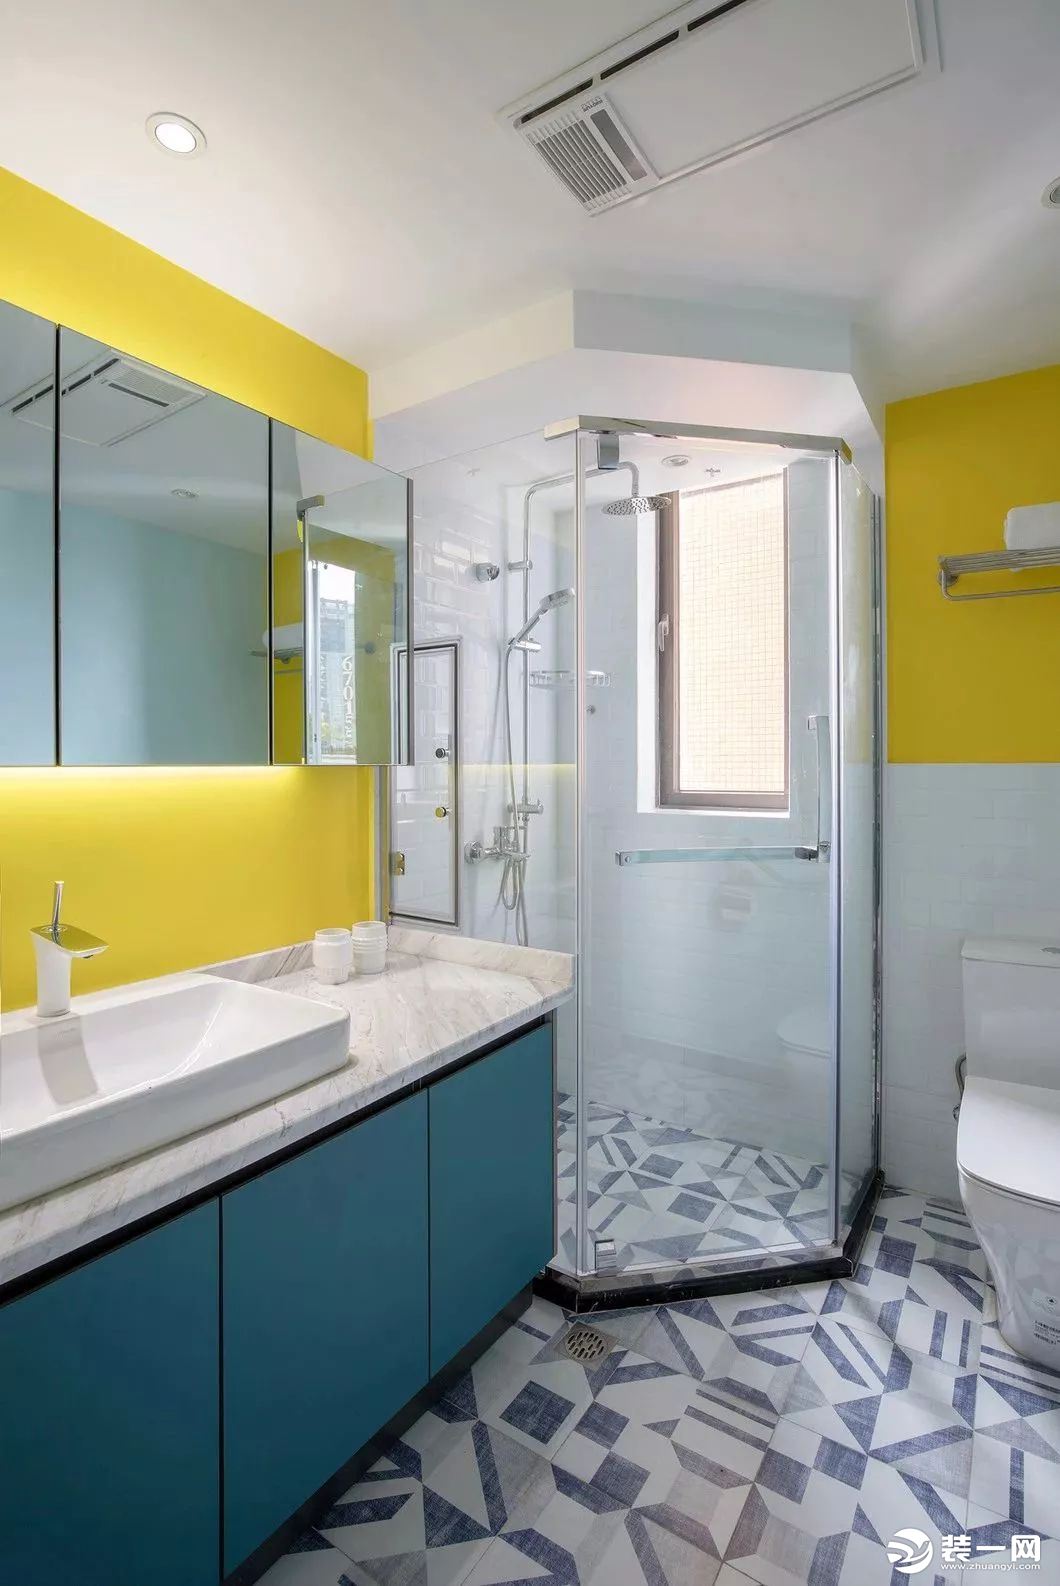 卫生间做到干湿分明，独立的洗手盆，独立的洗浴空间，功能区域区分明显。黄色和蓝色的碰撞，冷暖相遇产